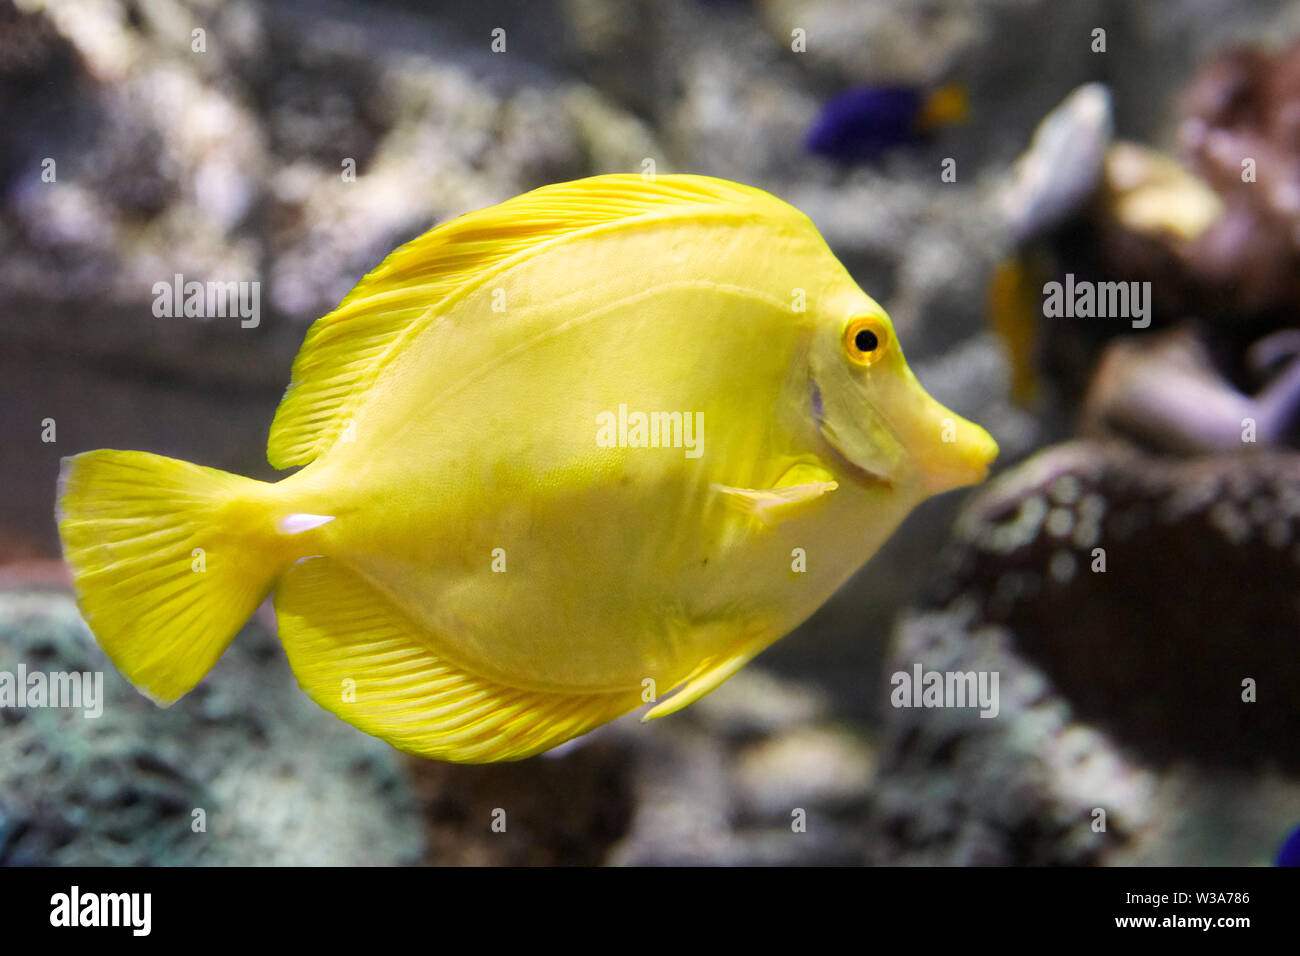 Tang jaune en captivité (Zebrasoma flavescens), un des poissons de récifs coralliens. Aquarium de rêve à OCT Harbour. Shenzhen, province de Guangdong, en Chine. Banque D'Images